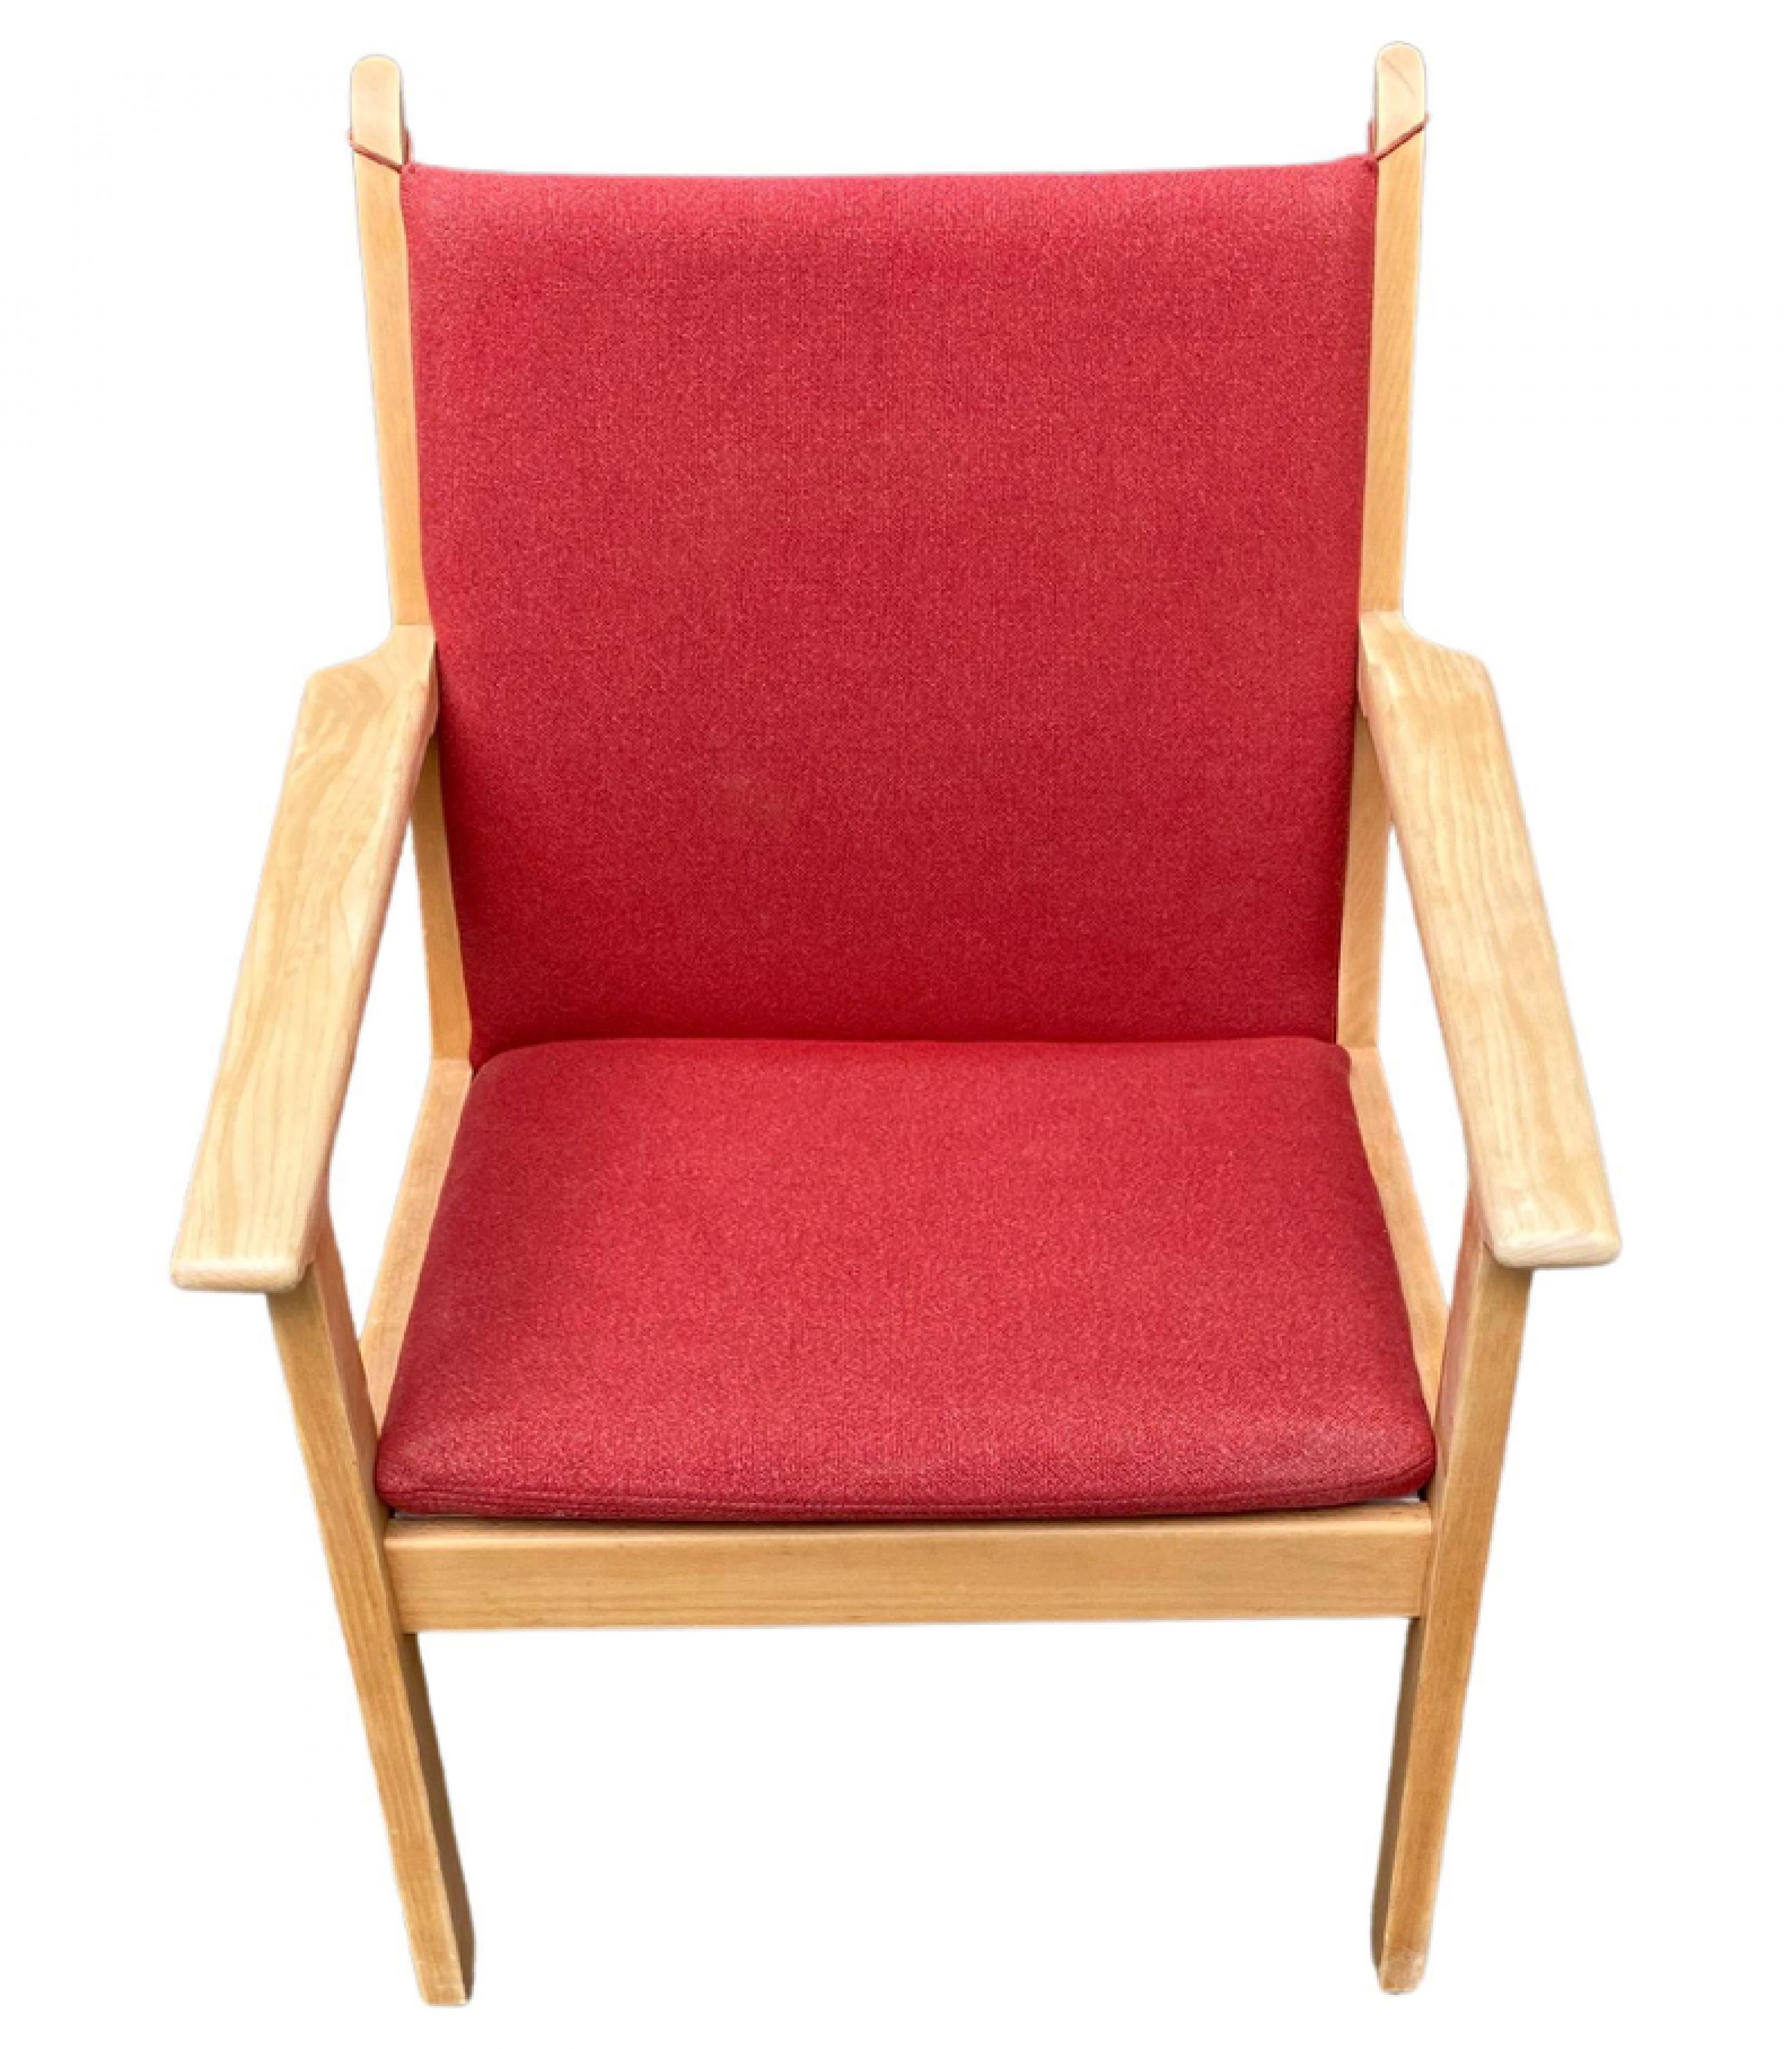 Danish Hans J. Wegner GE-284 Lounge Chair For Sale